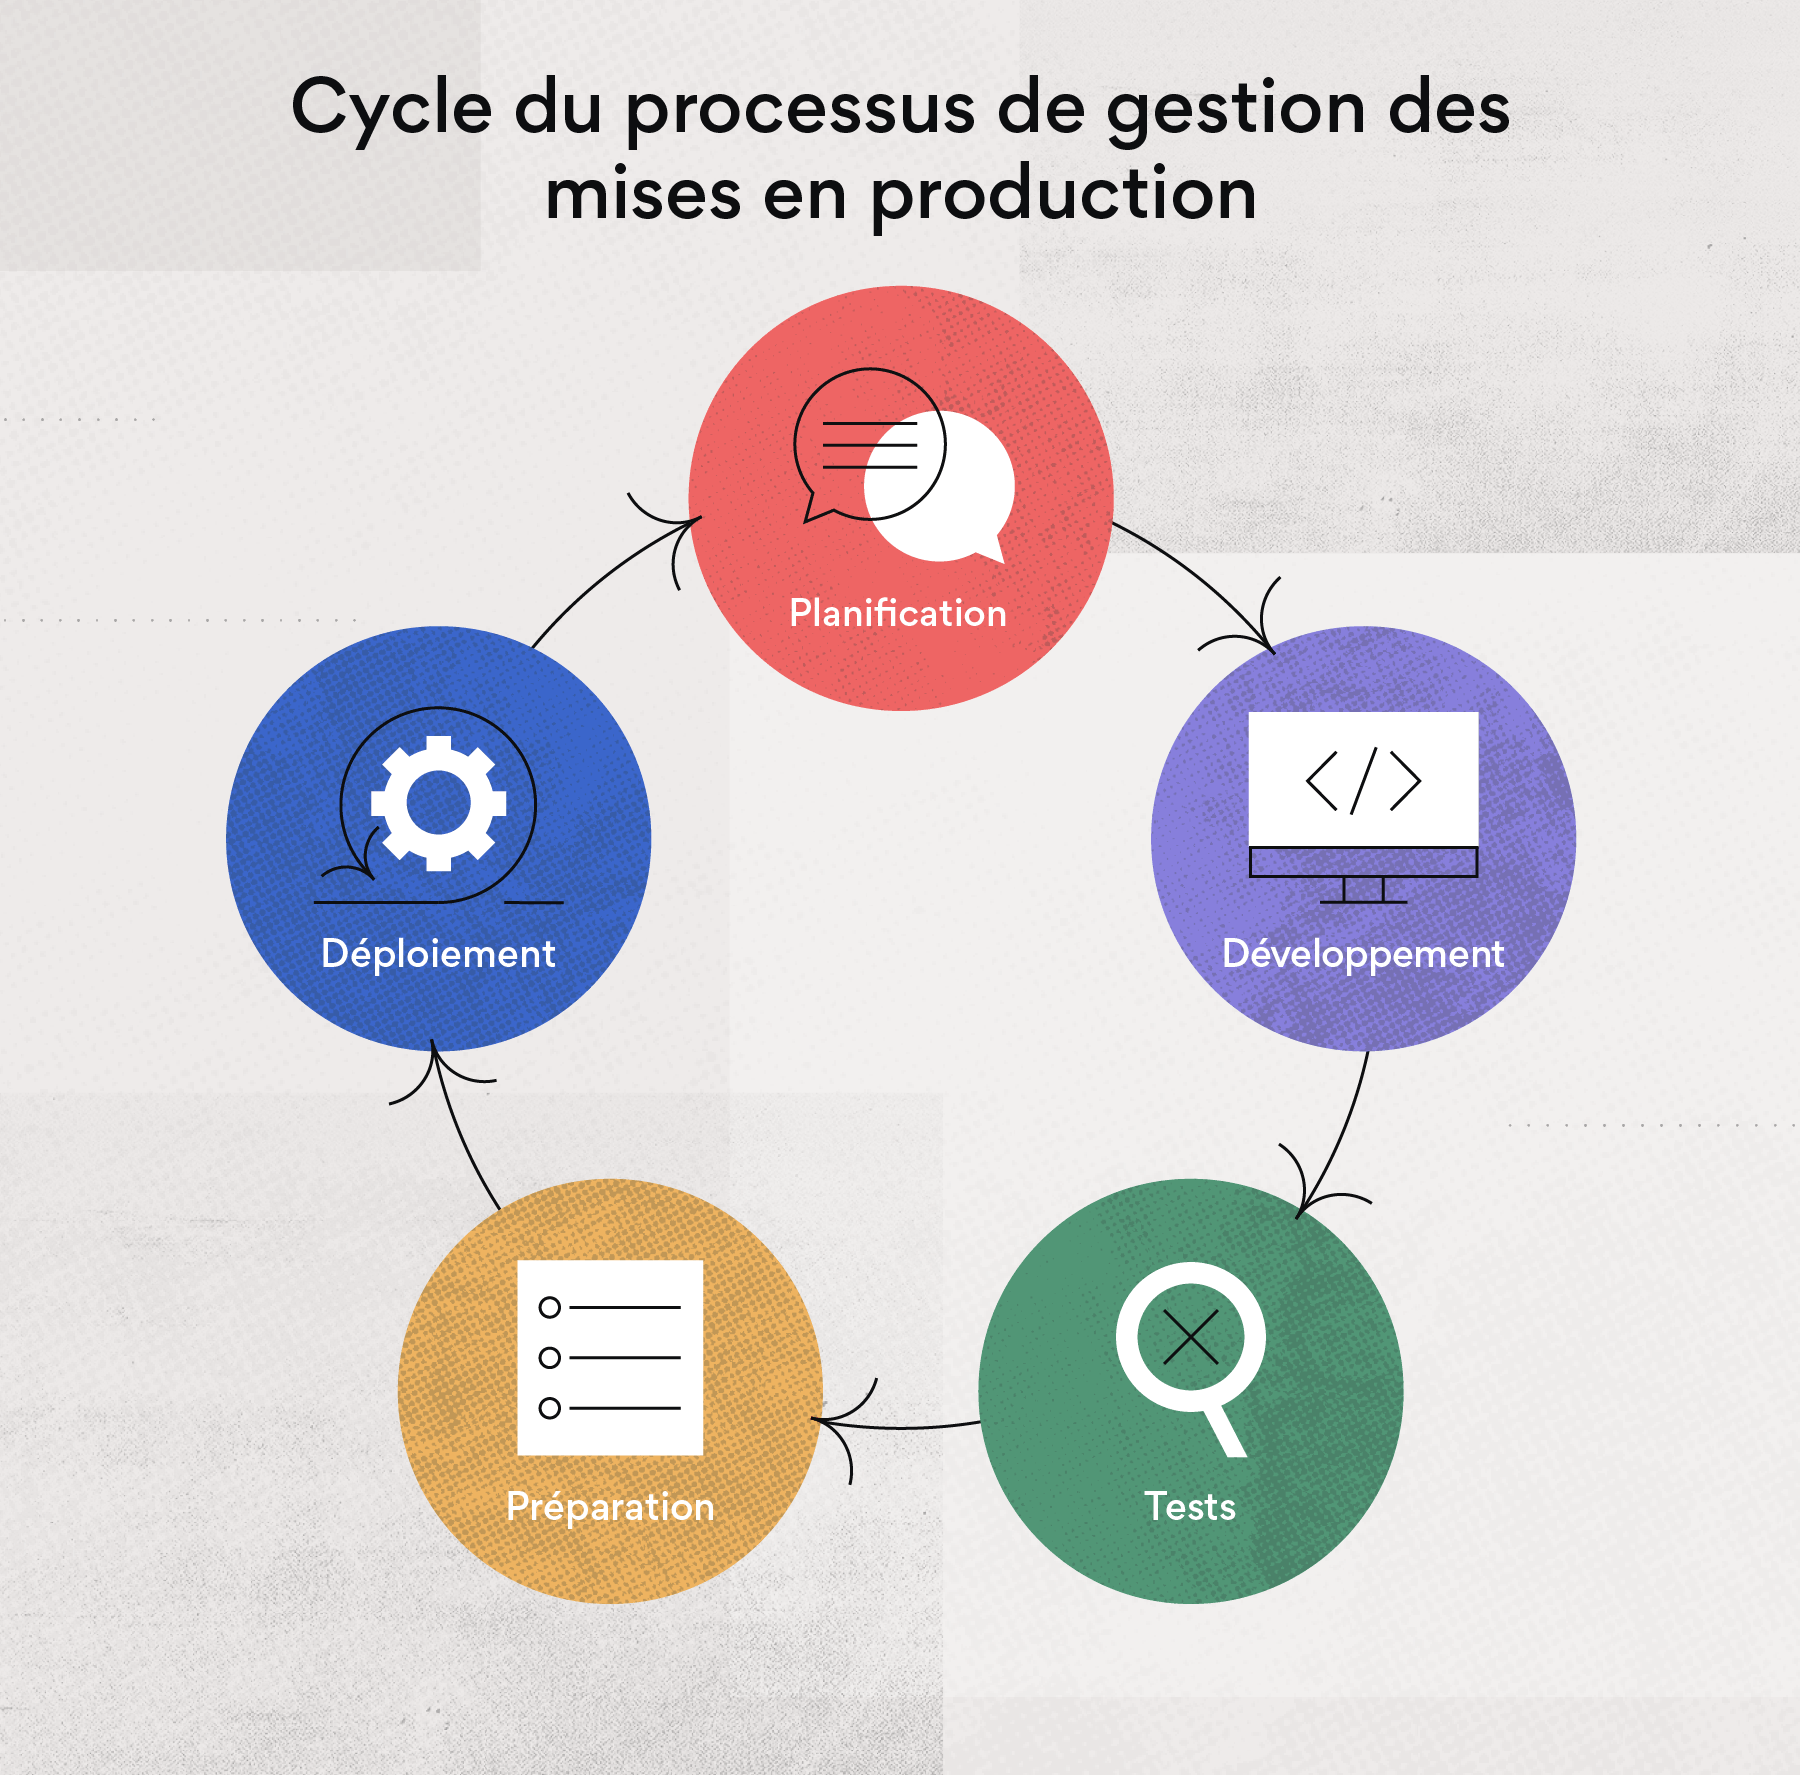 Cycle du processus de gestion des mises en production